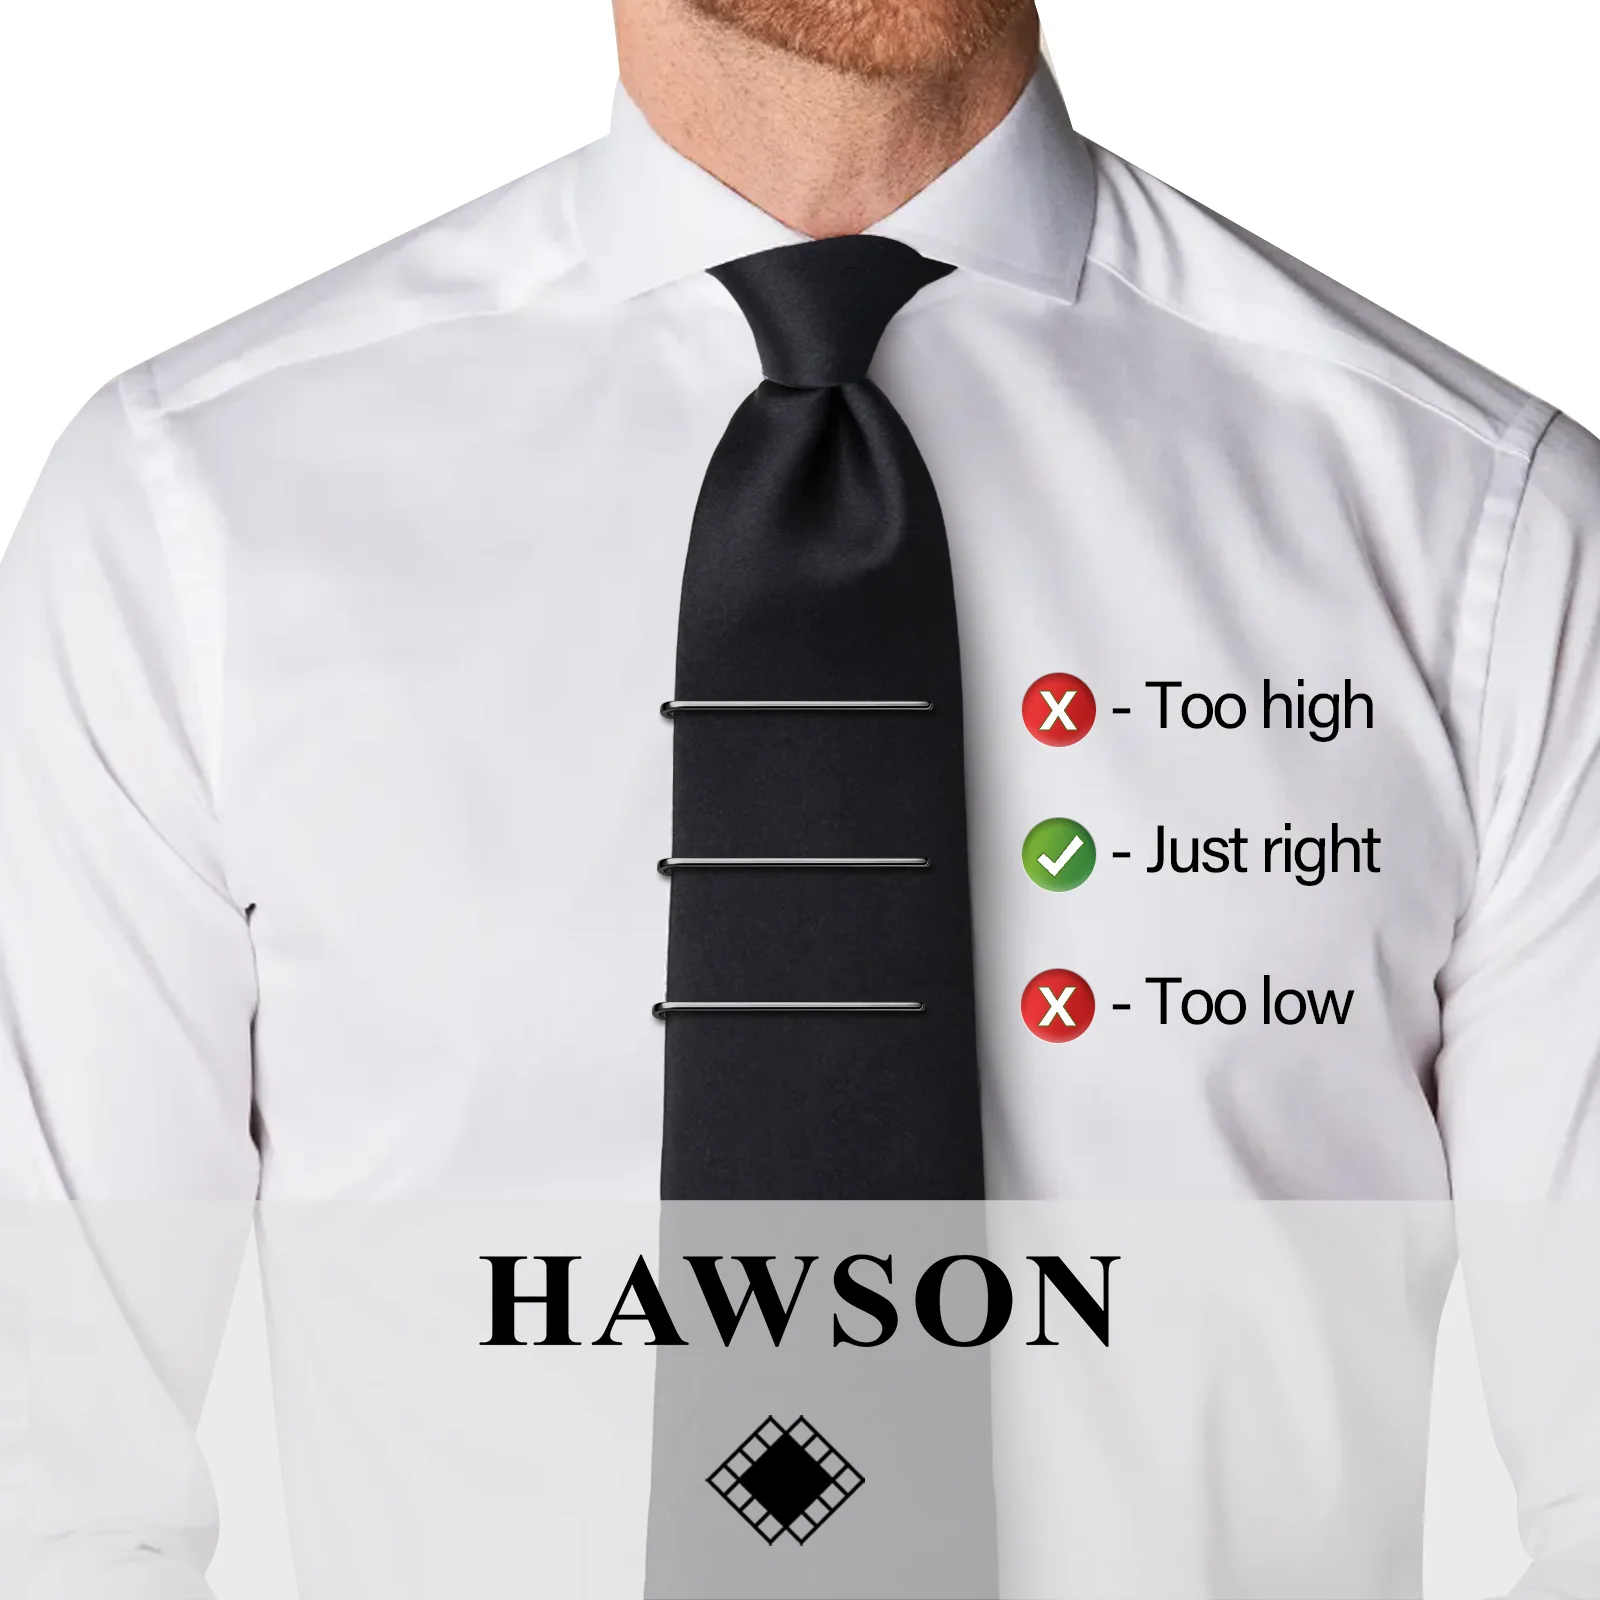 HAWSON-Clips de corbata para hombre, juego de barra de corbata súper delgada, caja de regalo empaquetada, adecuado para boda, aniversario, negocios y vida diaria, 4 piezas